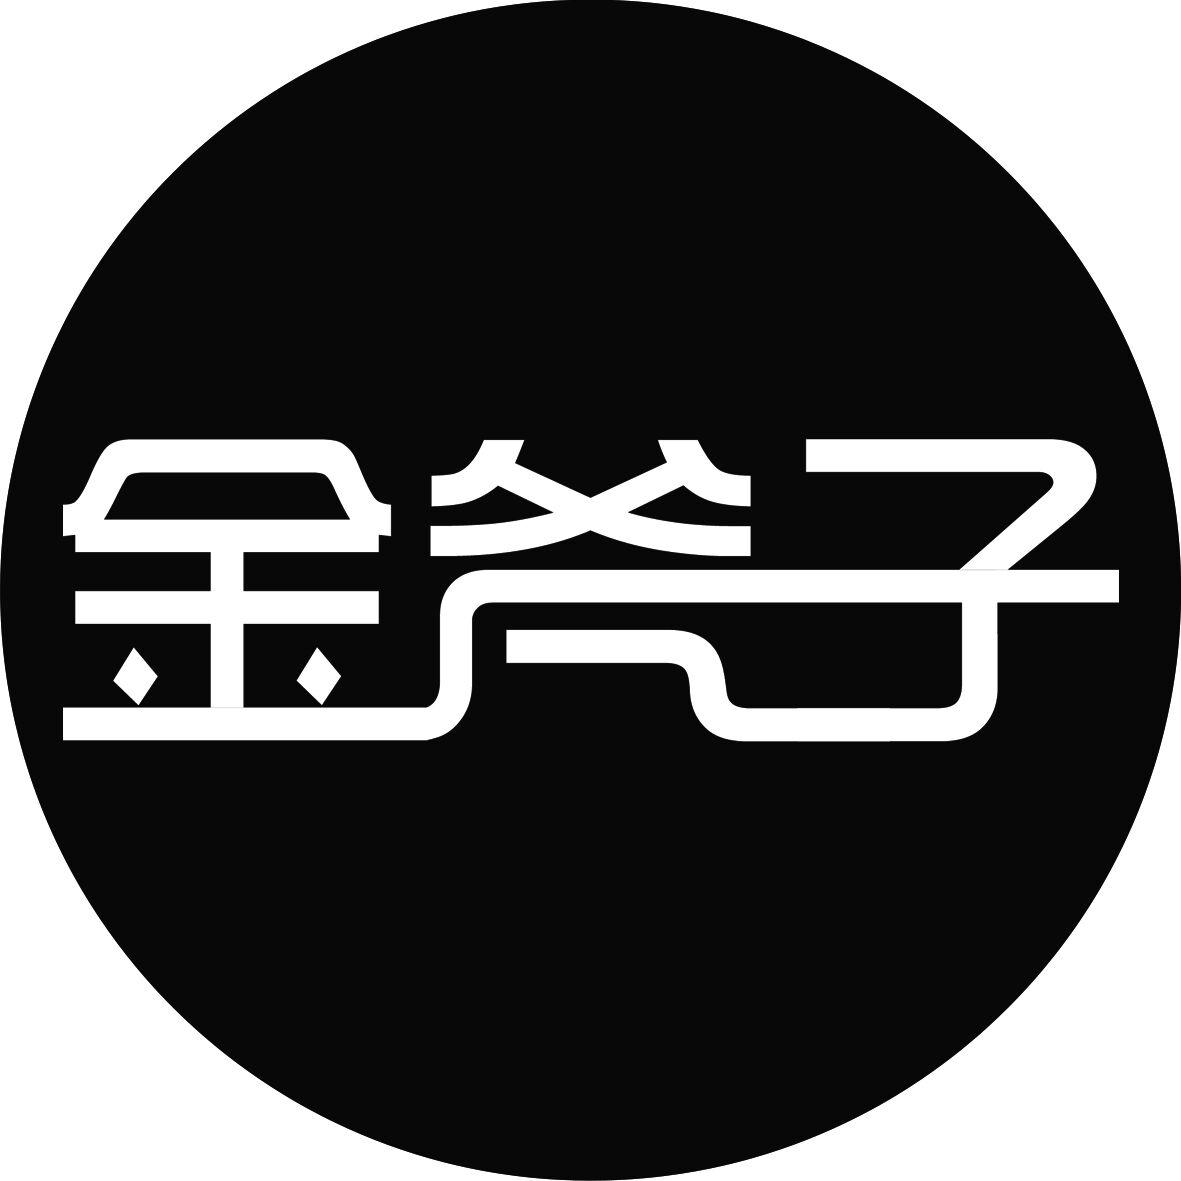 金斧子logo图片